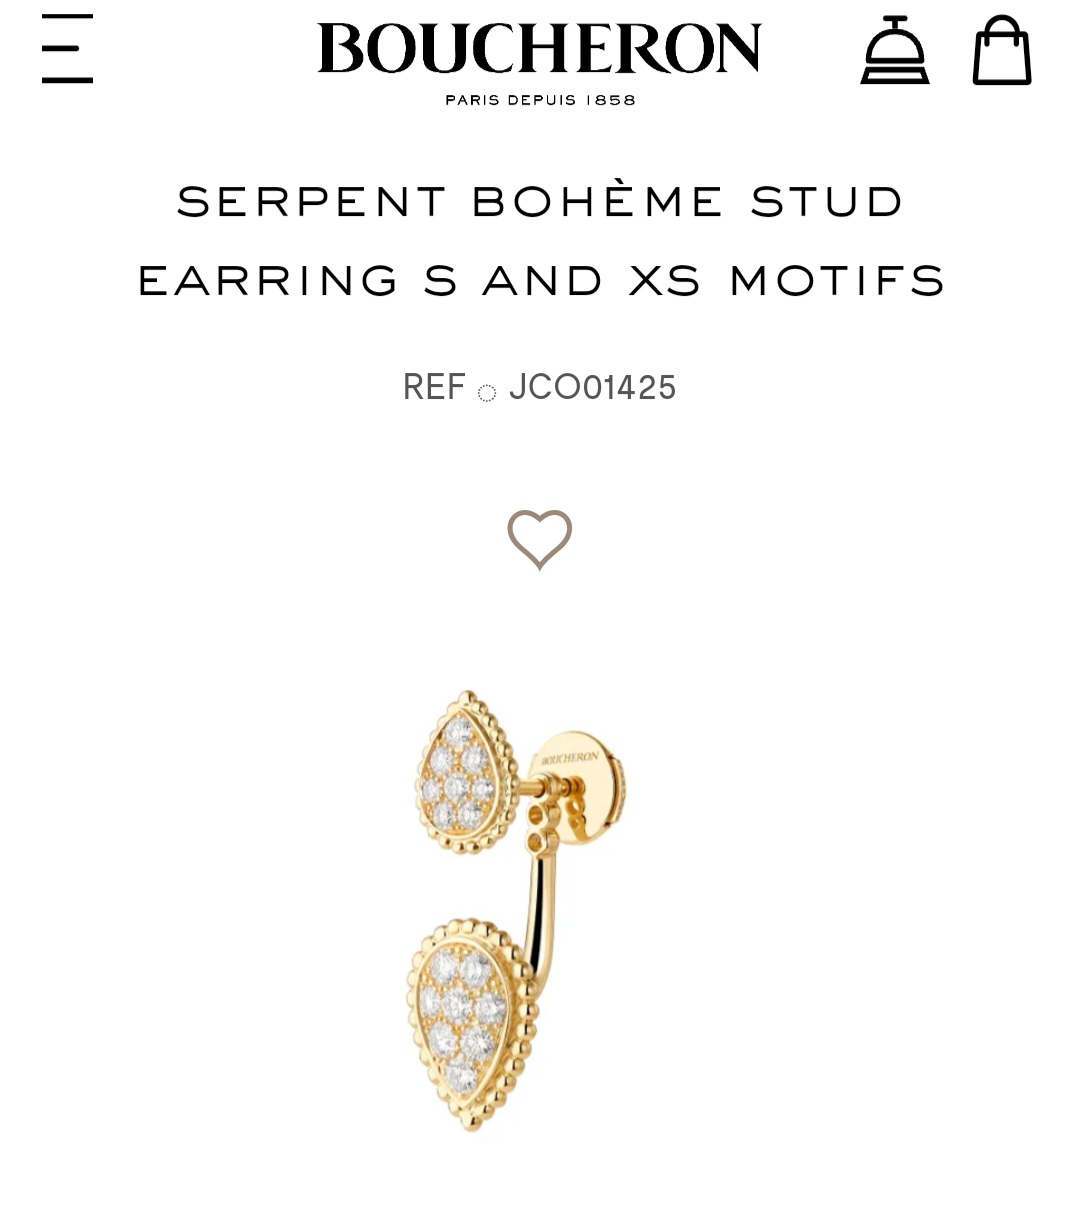 Boucheron serpent bohème stud earring s and xs motifs earrings